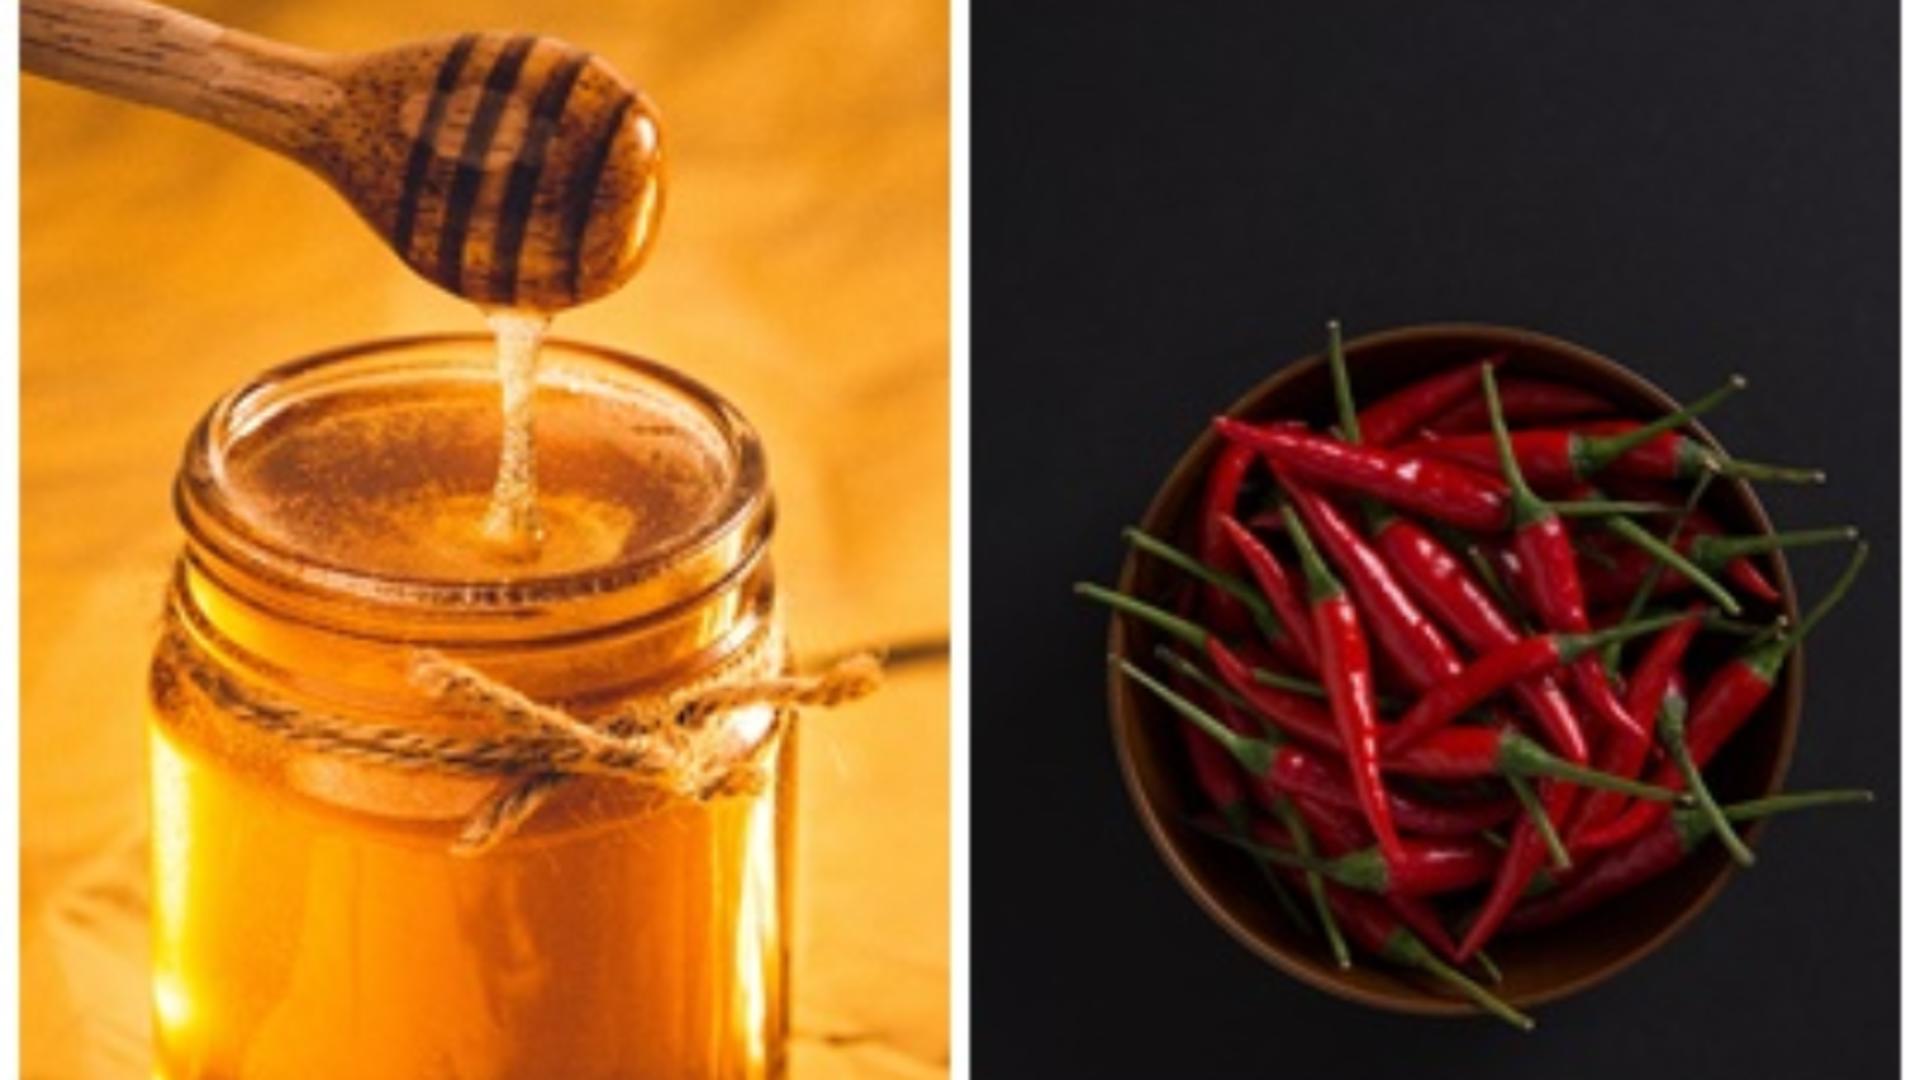 Combină mierea cu ardei iute și vei obține un elixir pentru sănătate uimitor/ Colaj foto: unsplash.com